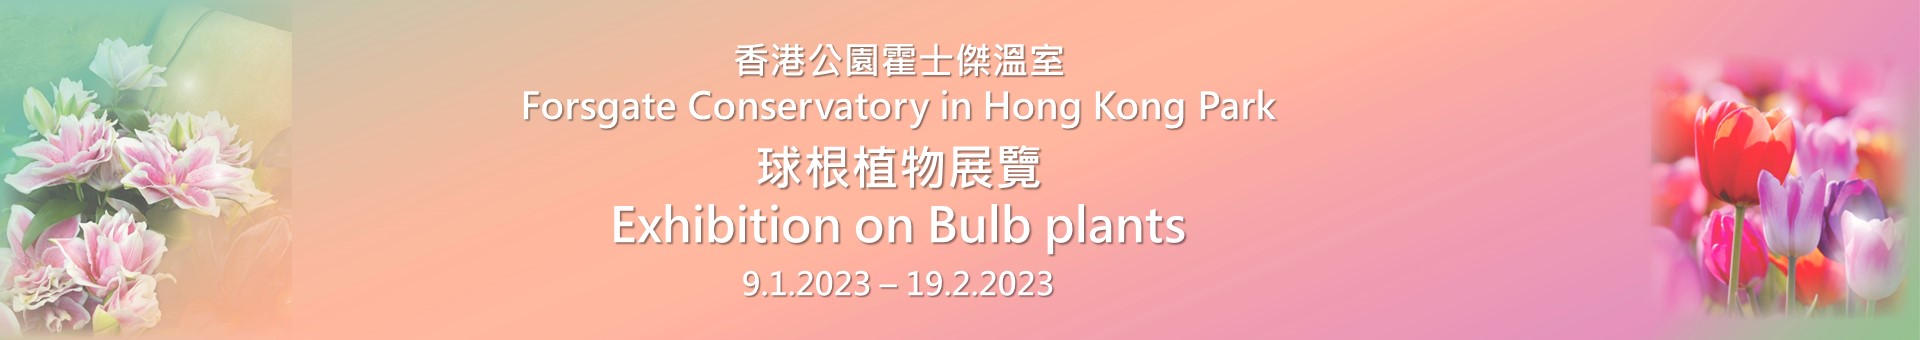 香港公园球根植物主题展览